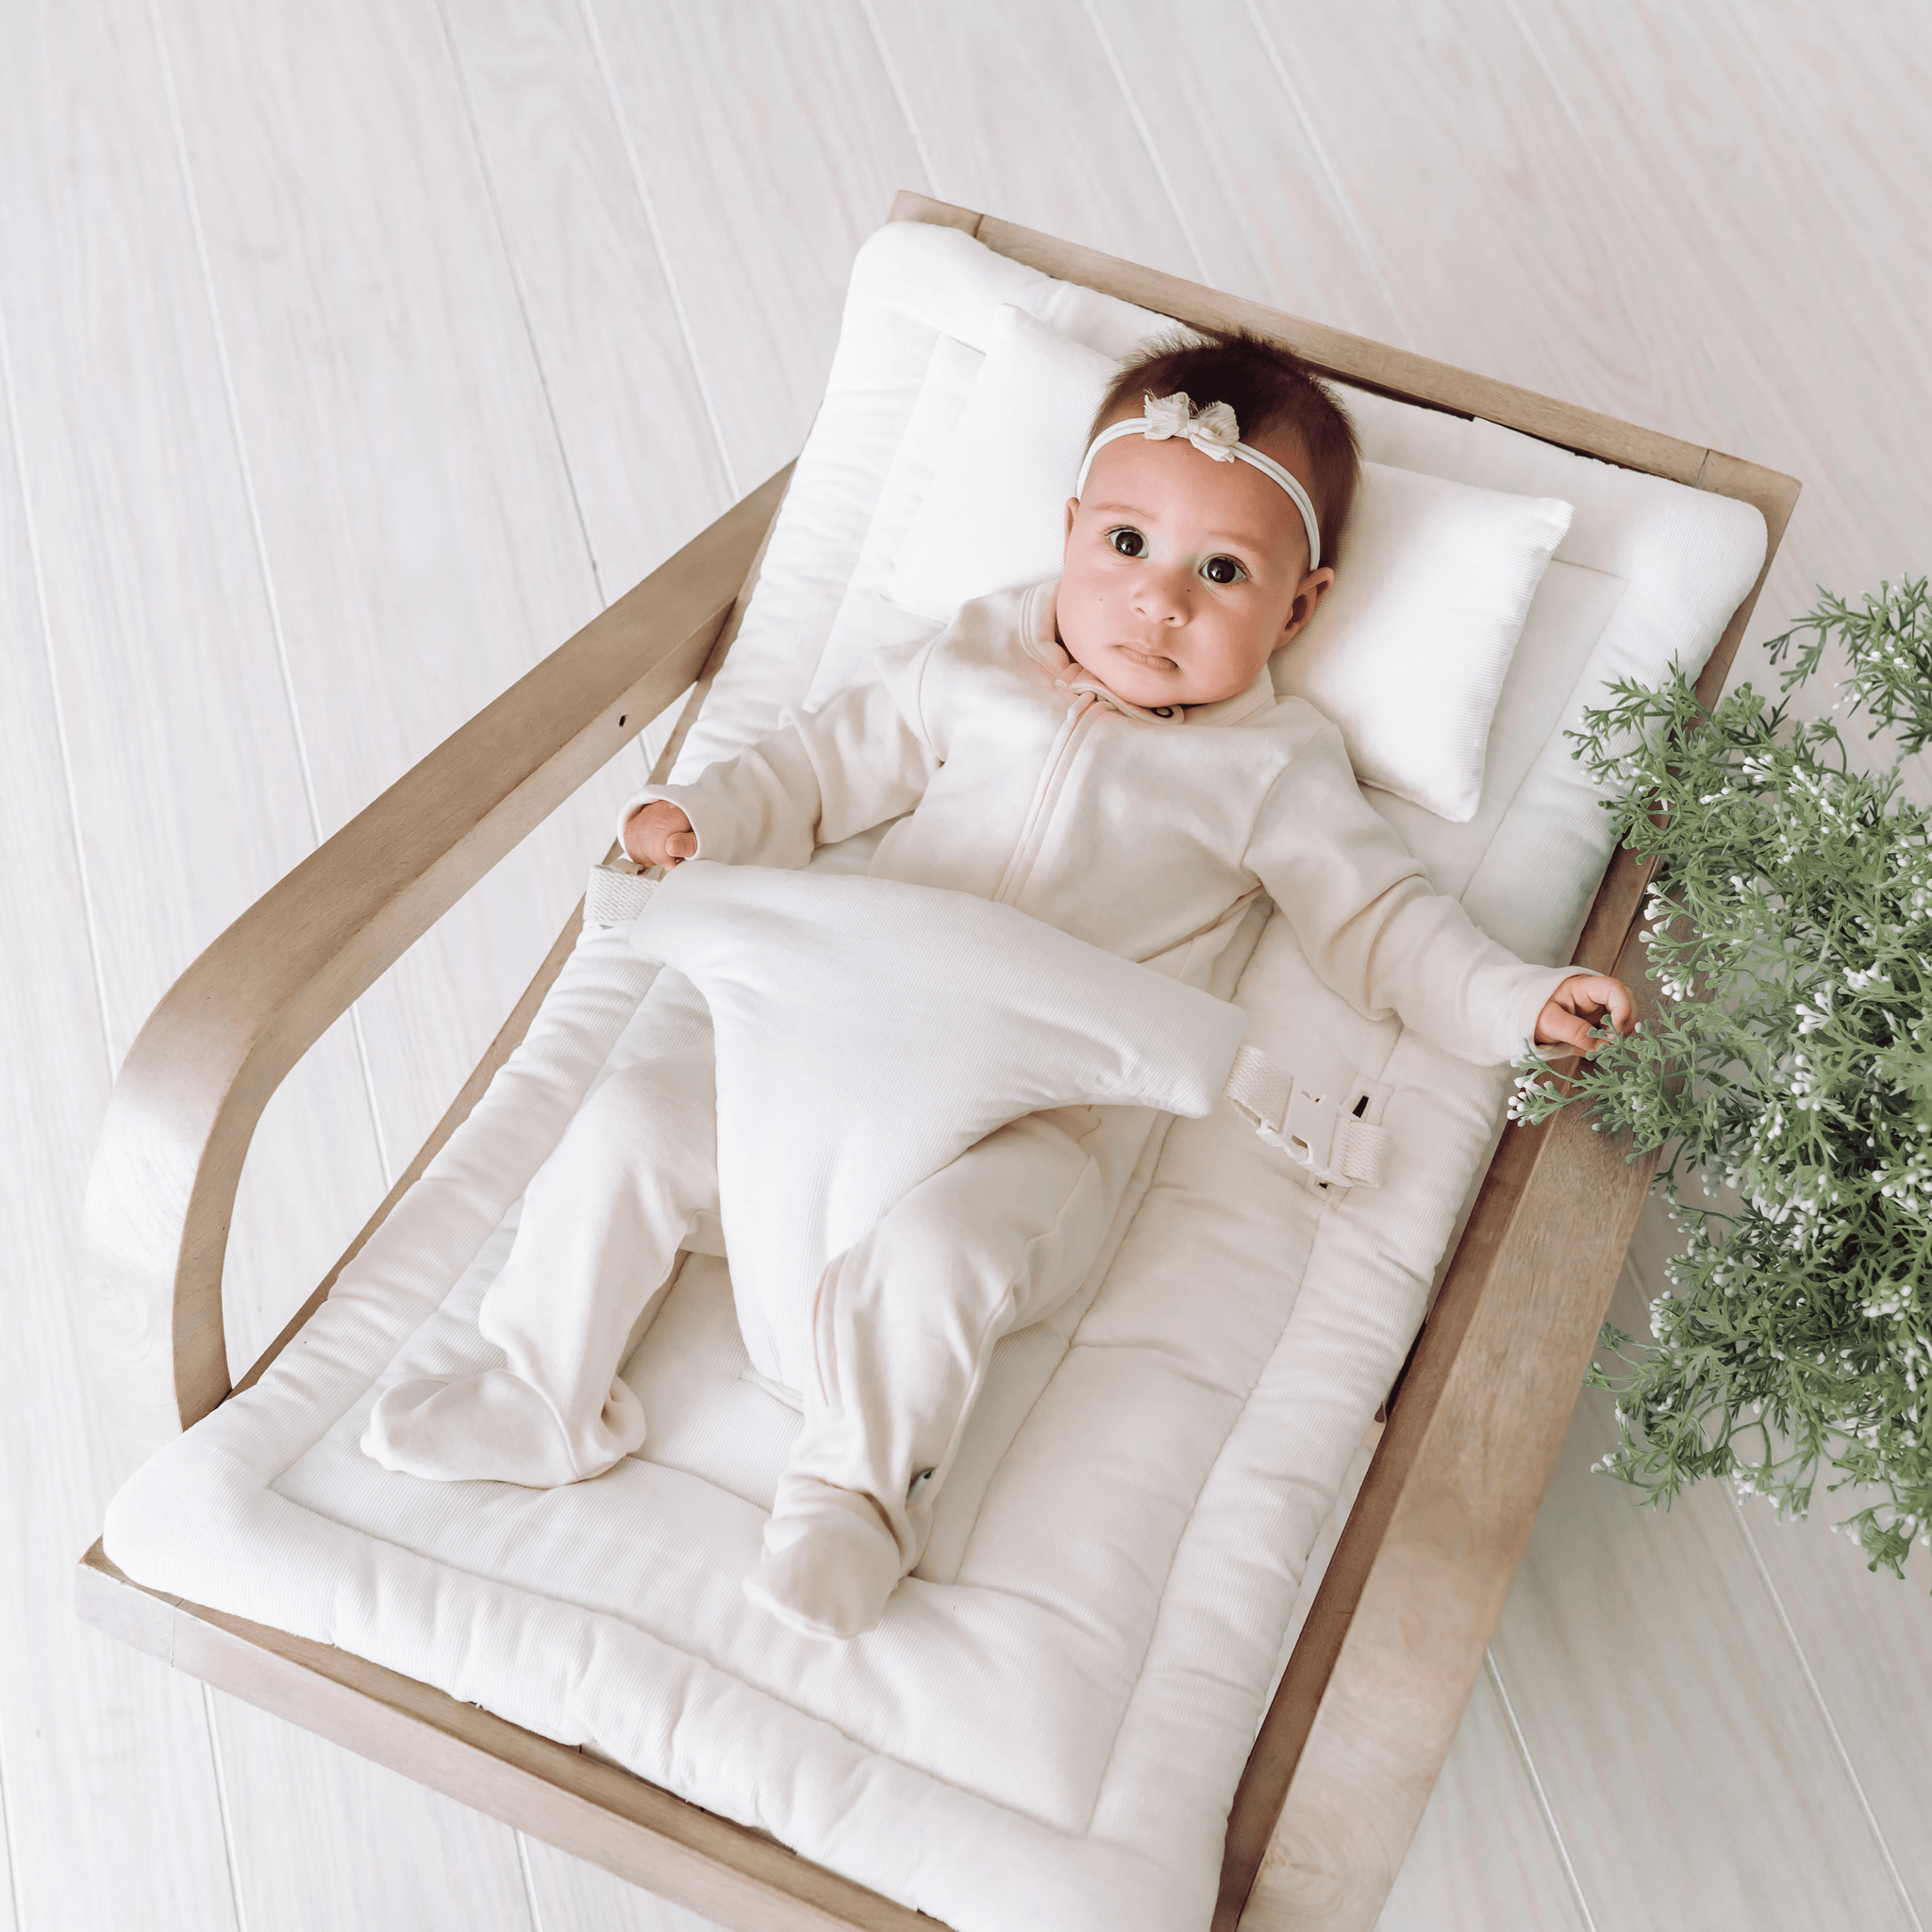 Om Baby Rocker - Grey Wood & Ivory Cushion